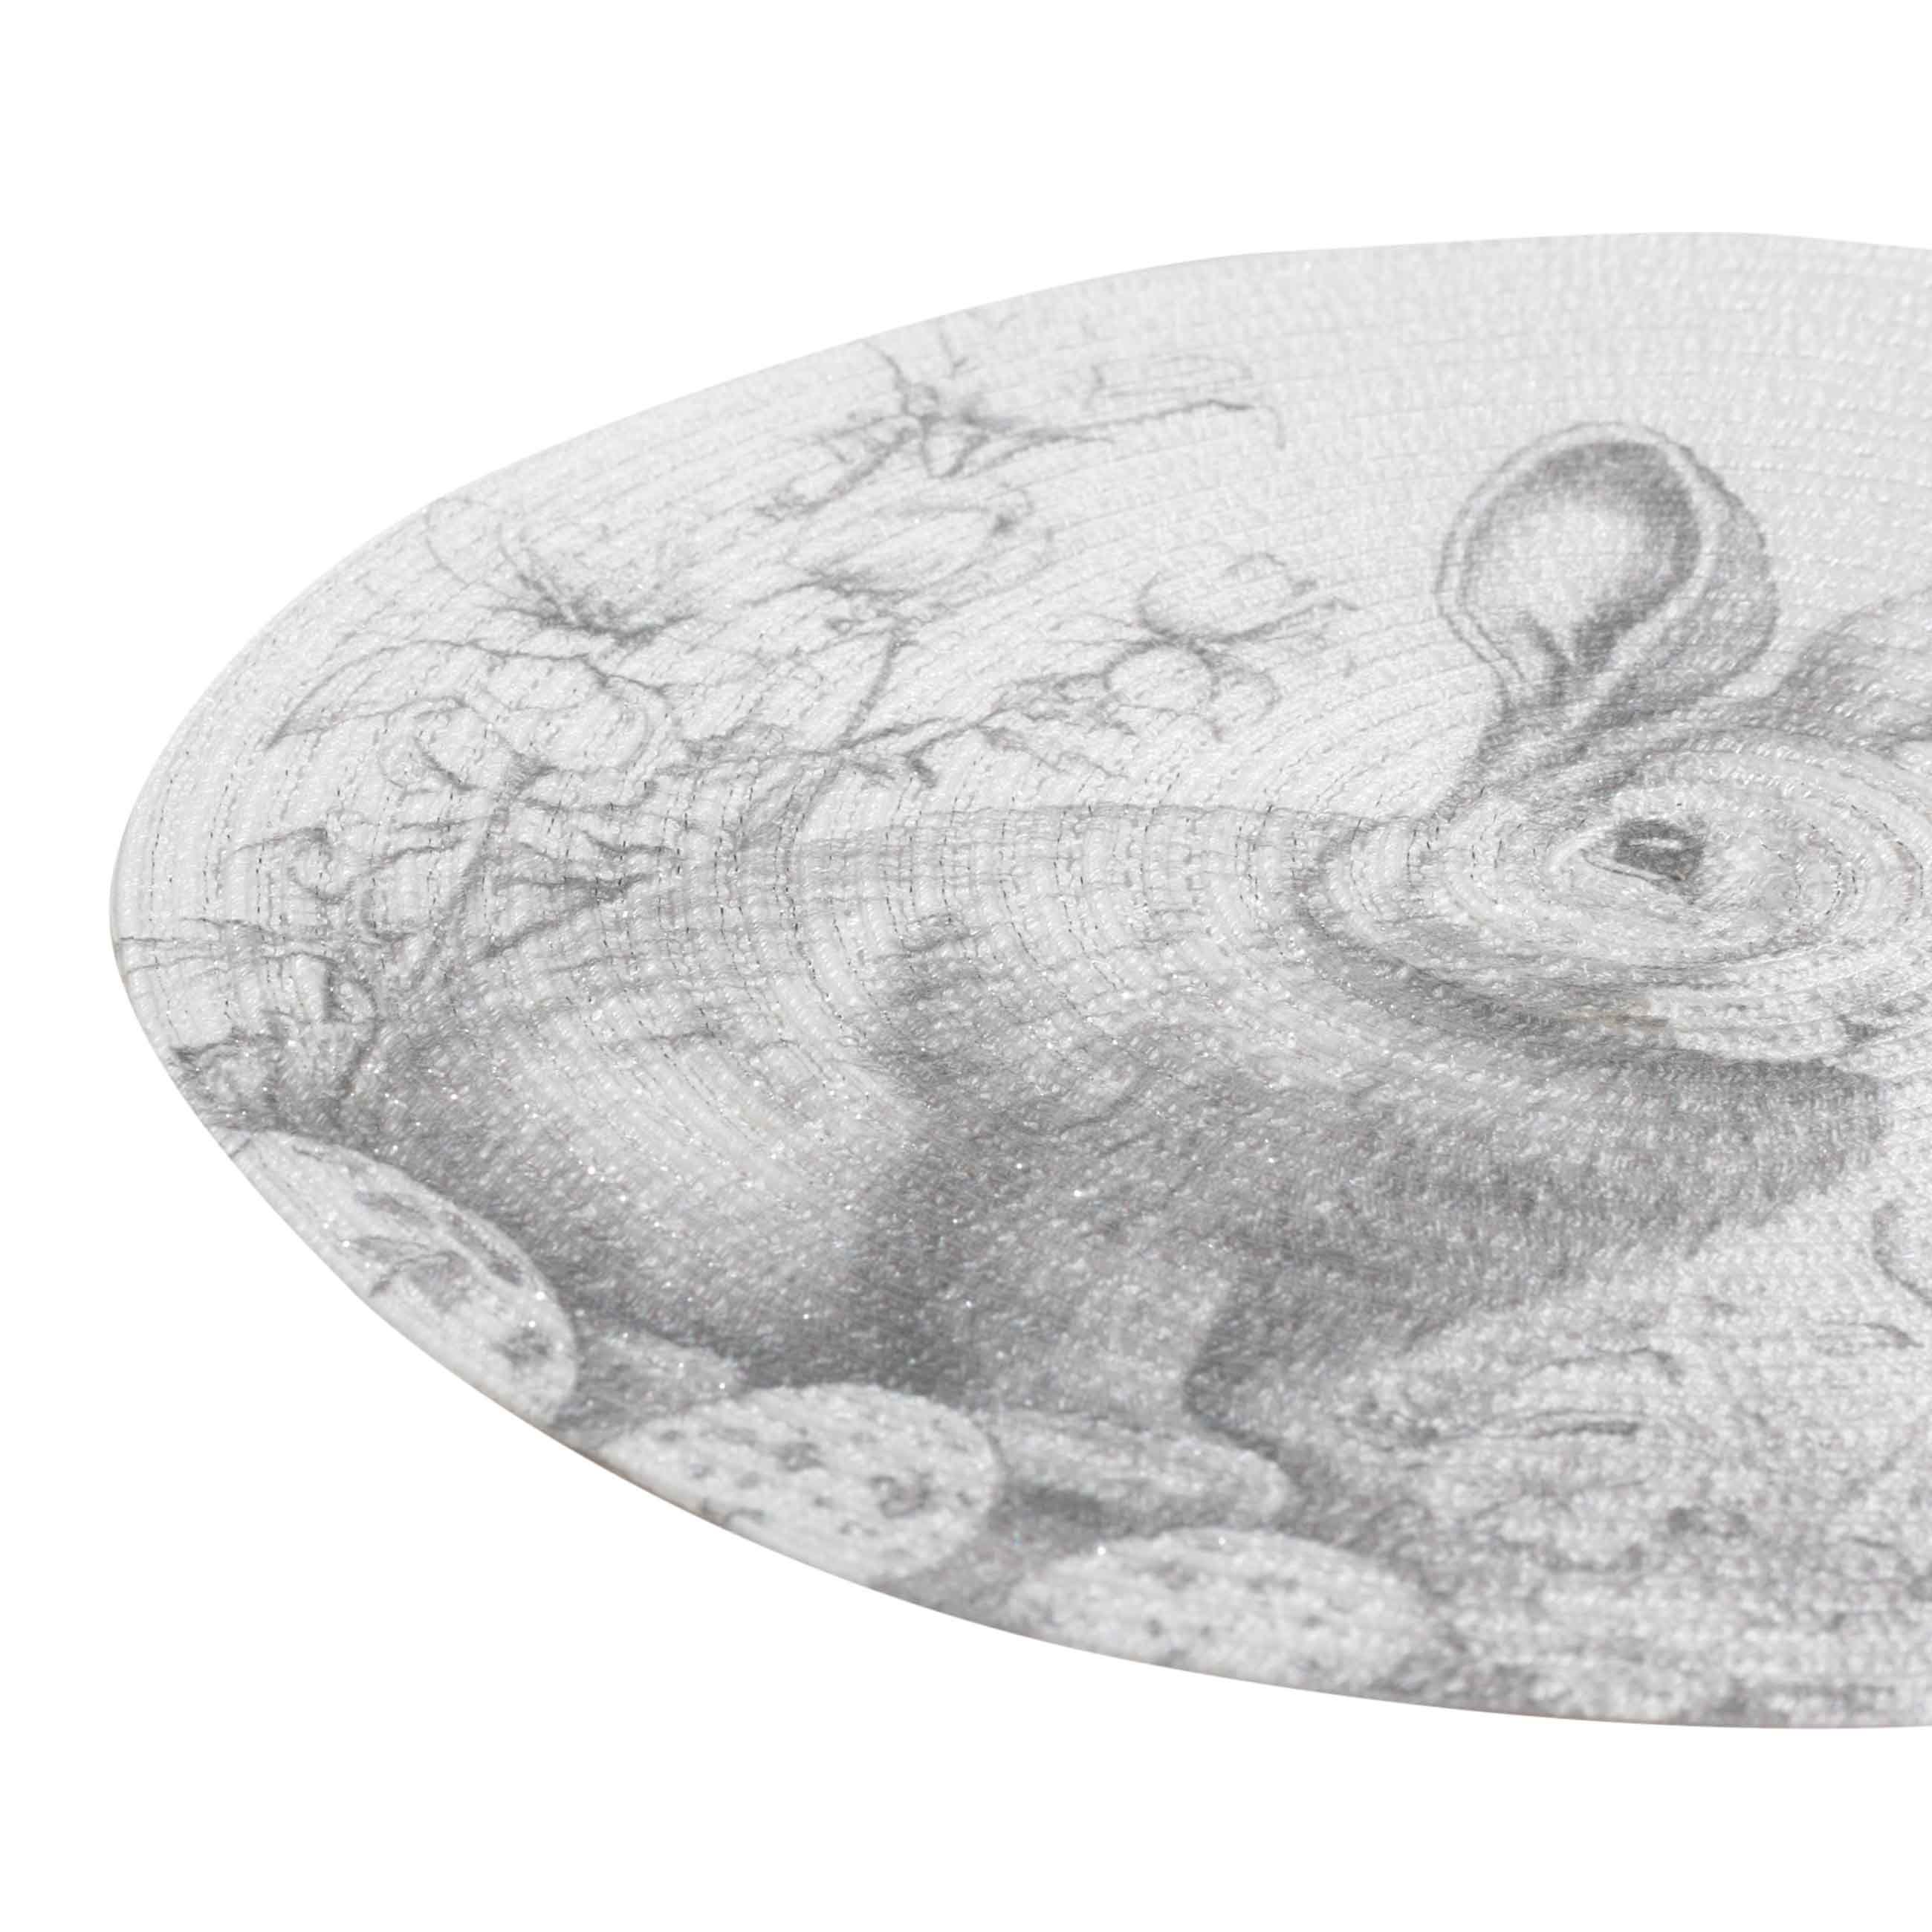 Салфетка под приборы, 38 см, полиэстер, круглая, белая, Графичный кролик, Rotary print изображение № 2